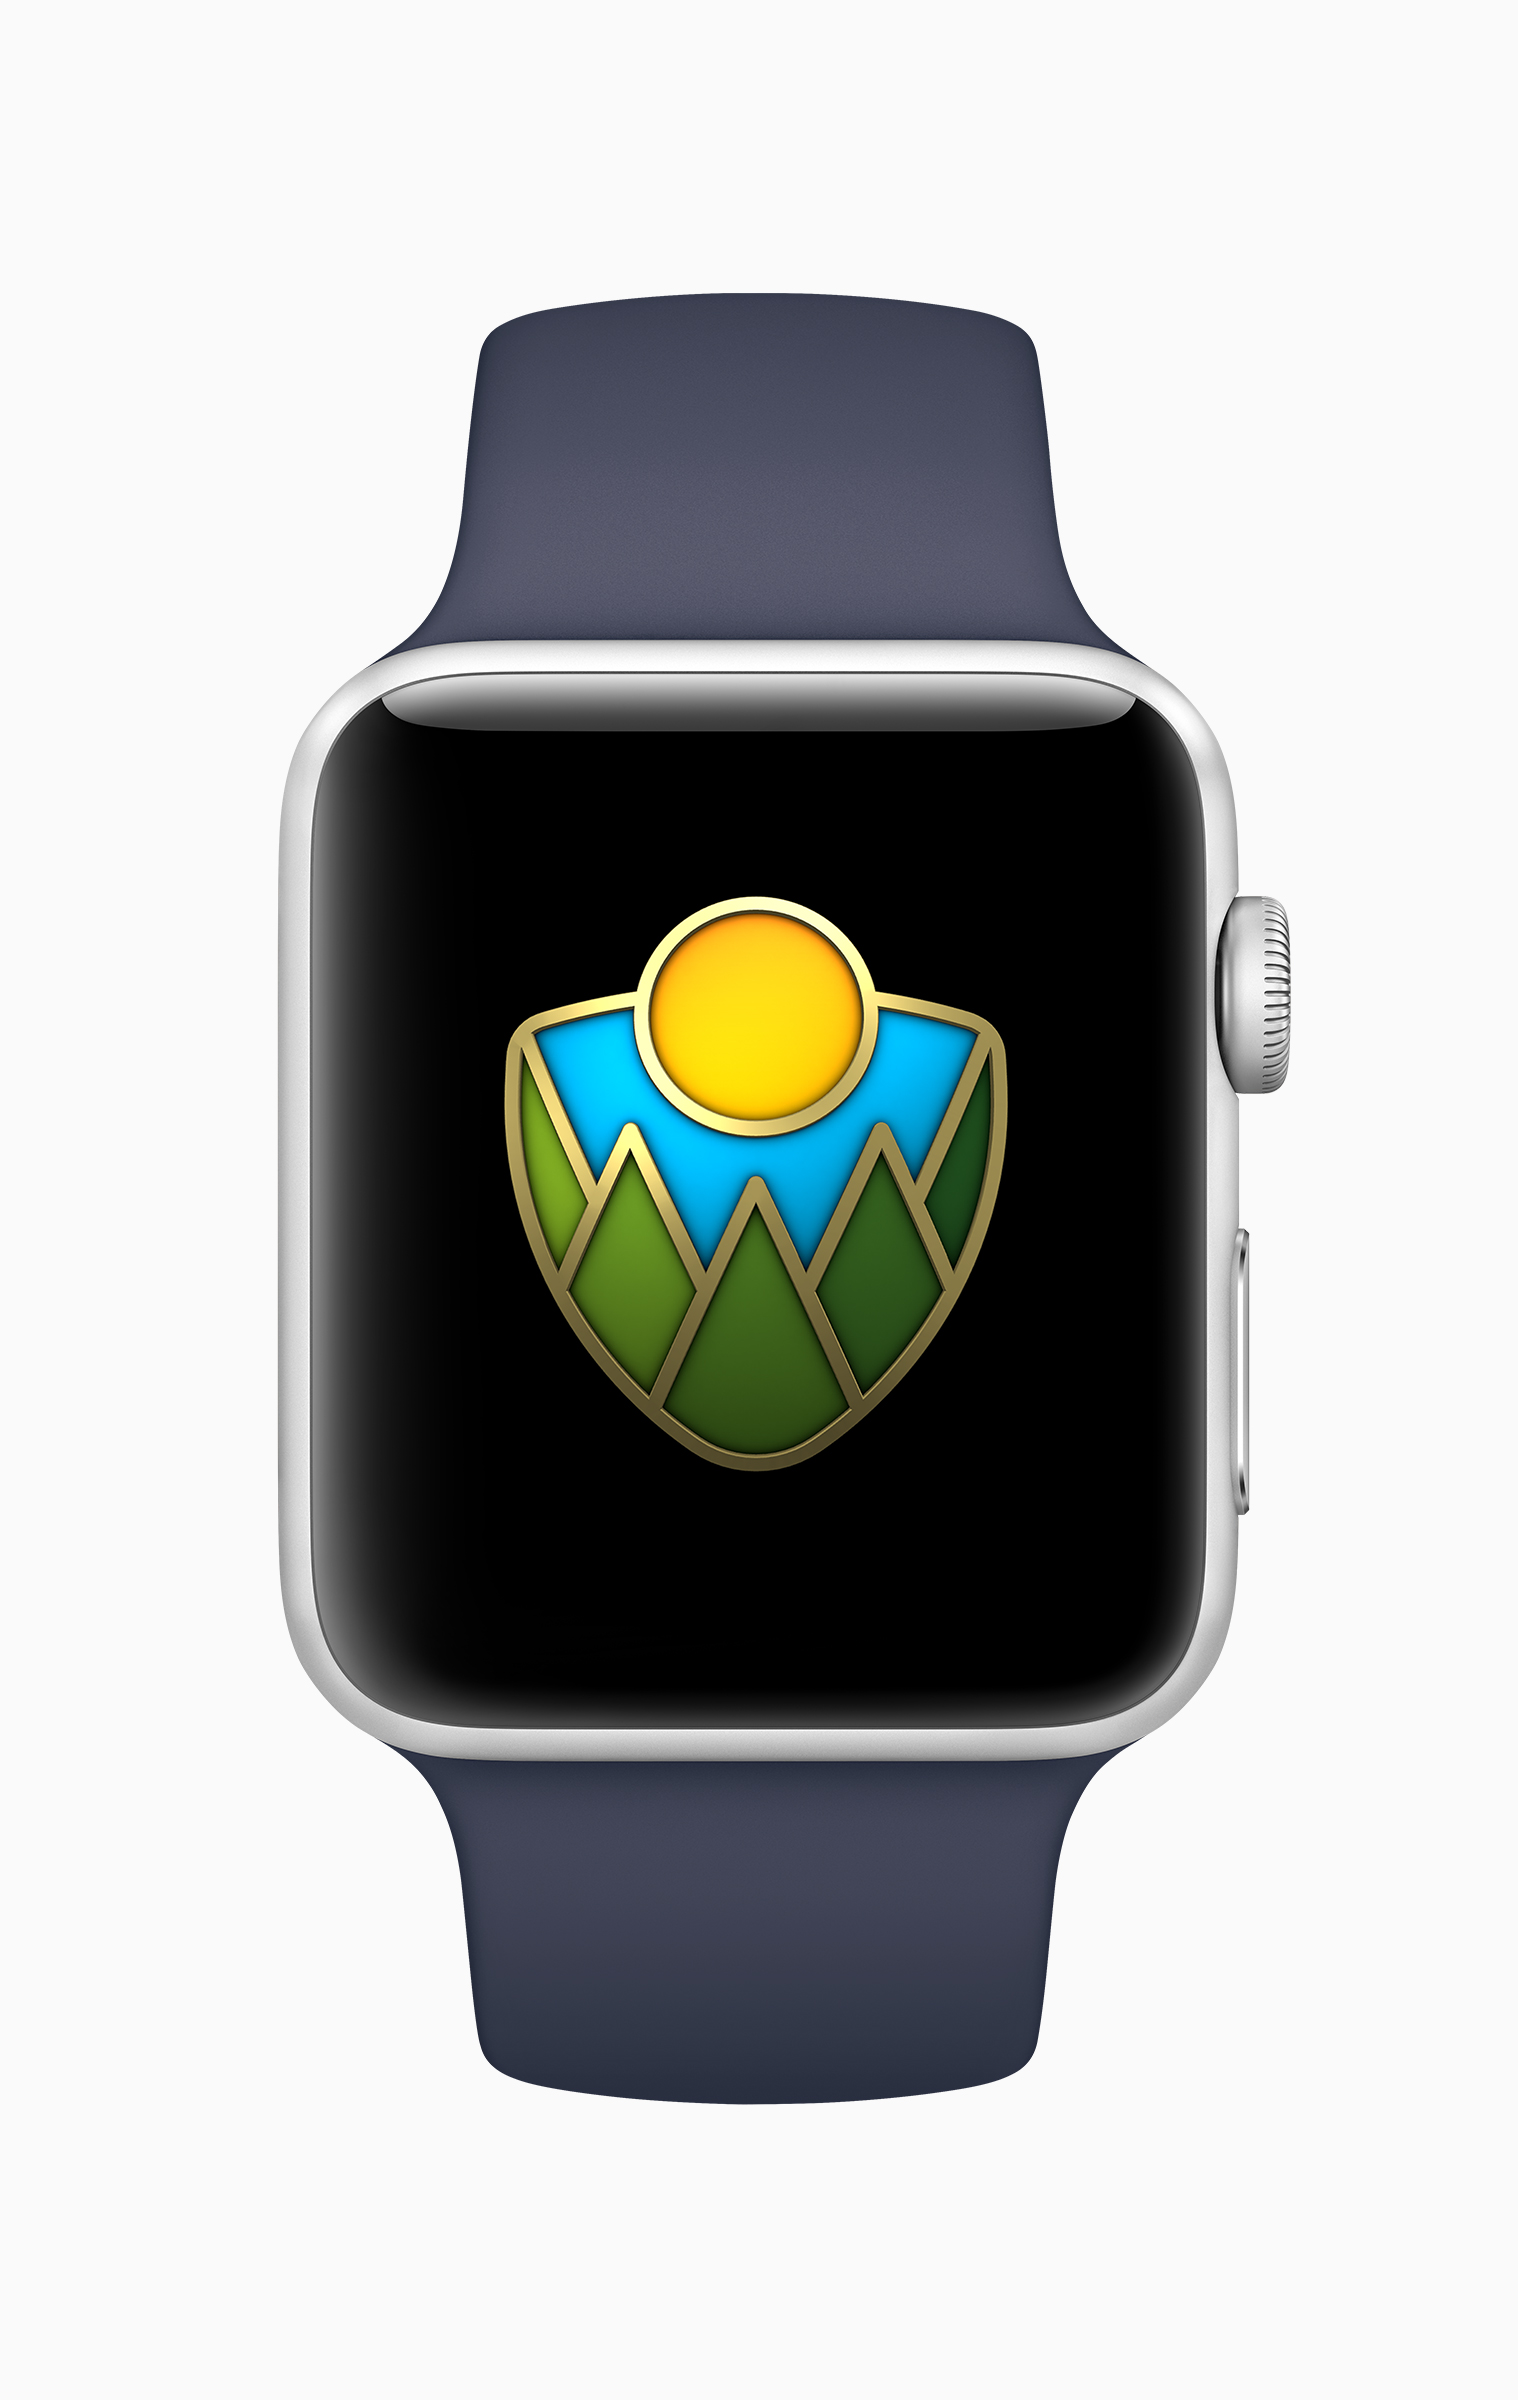 Apple、今年も米国の国立公園の支援キャンペーンを実施 − 9月1日には｢Apple Watch｣のアクティビティチャレンジも実施へ